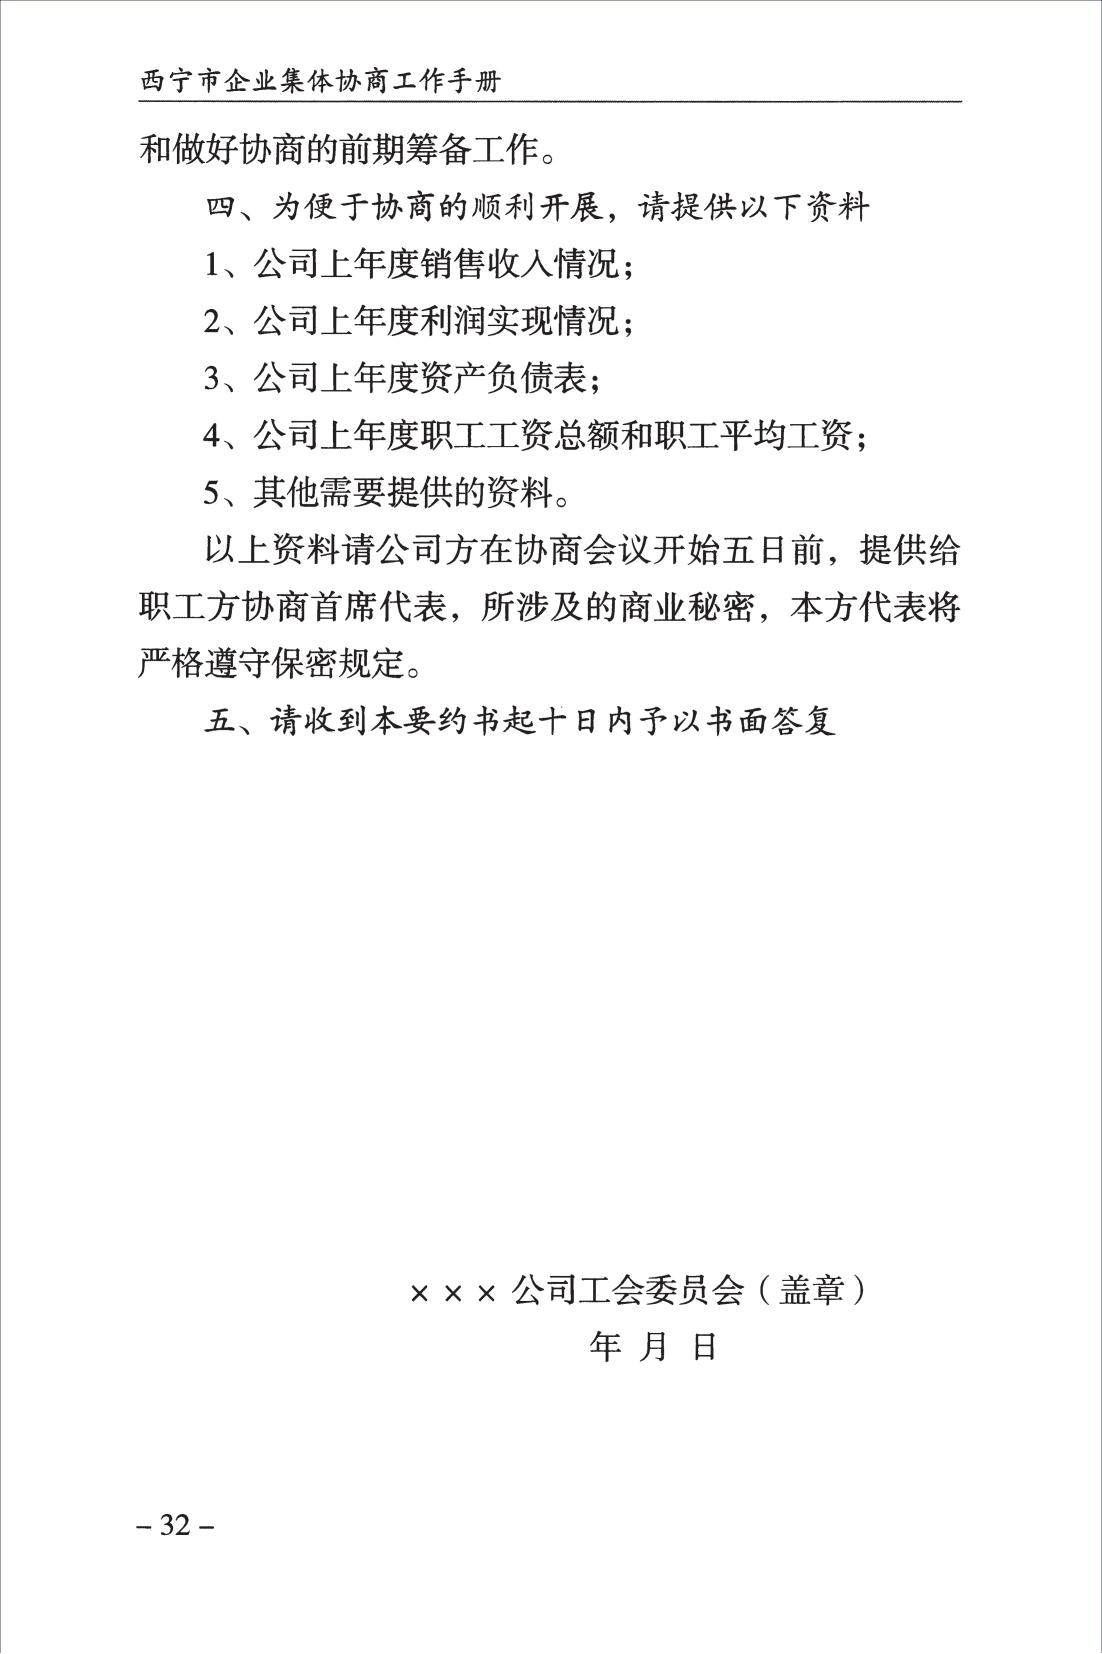 西宁市企业集体协商工作手册_34.jpg